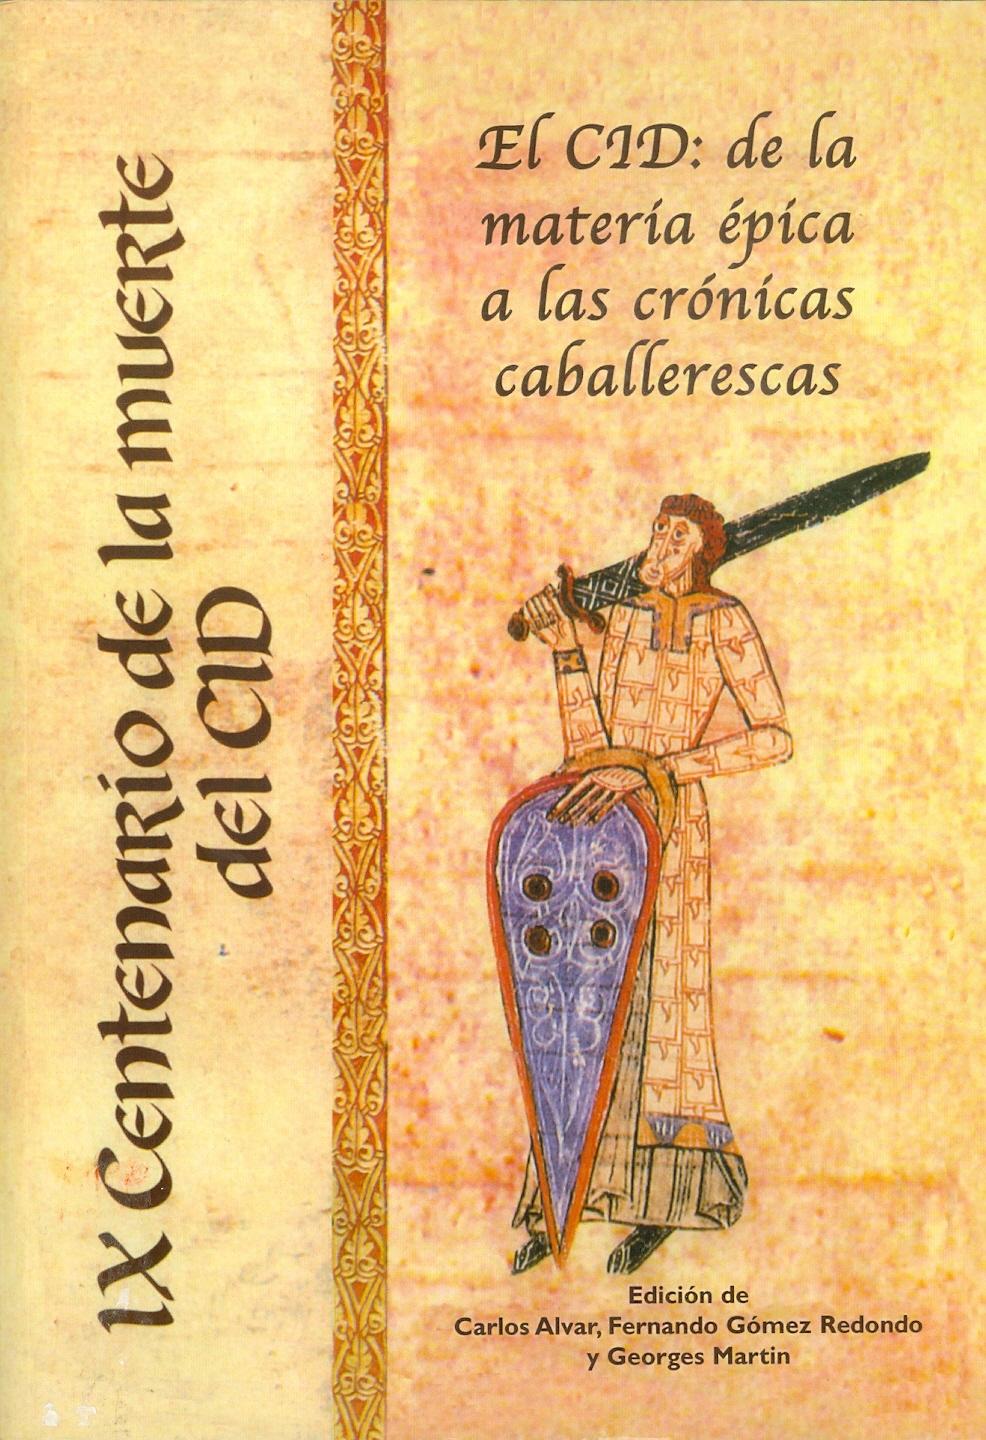 El Cid: de la materia épica a las crónicas caballerescas "Congreso Intern. IX Centenario de la Muerte del Cid"